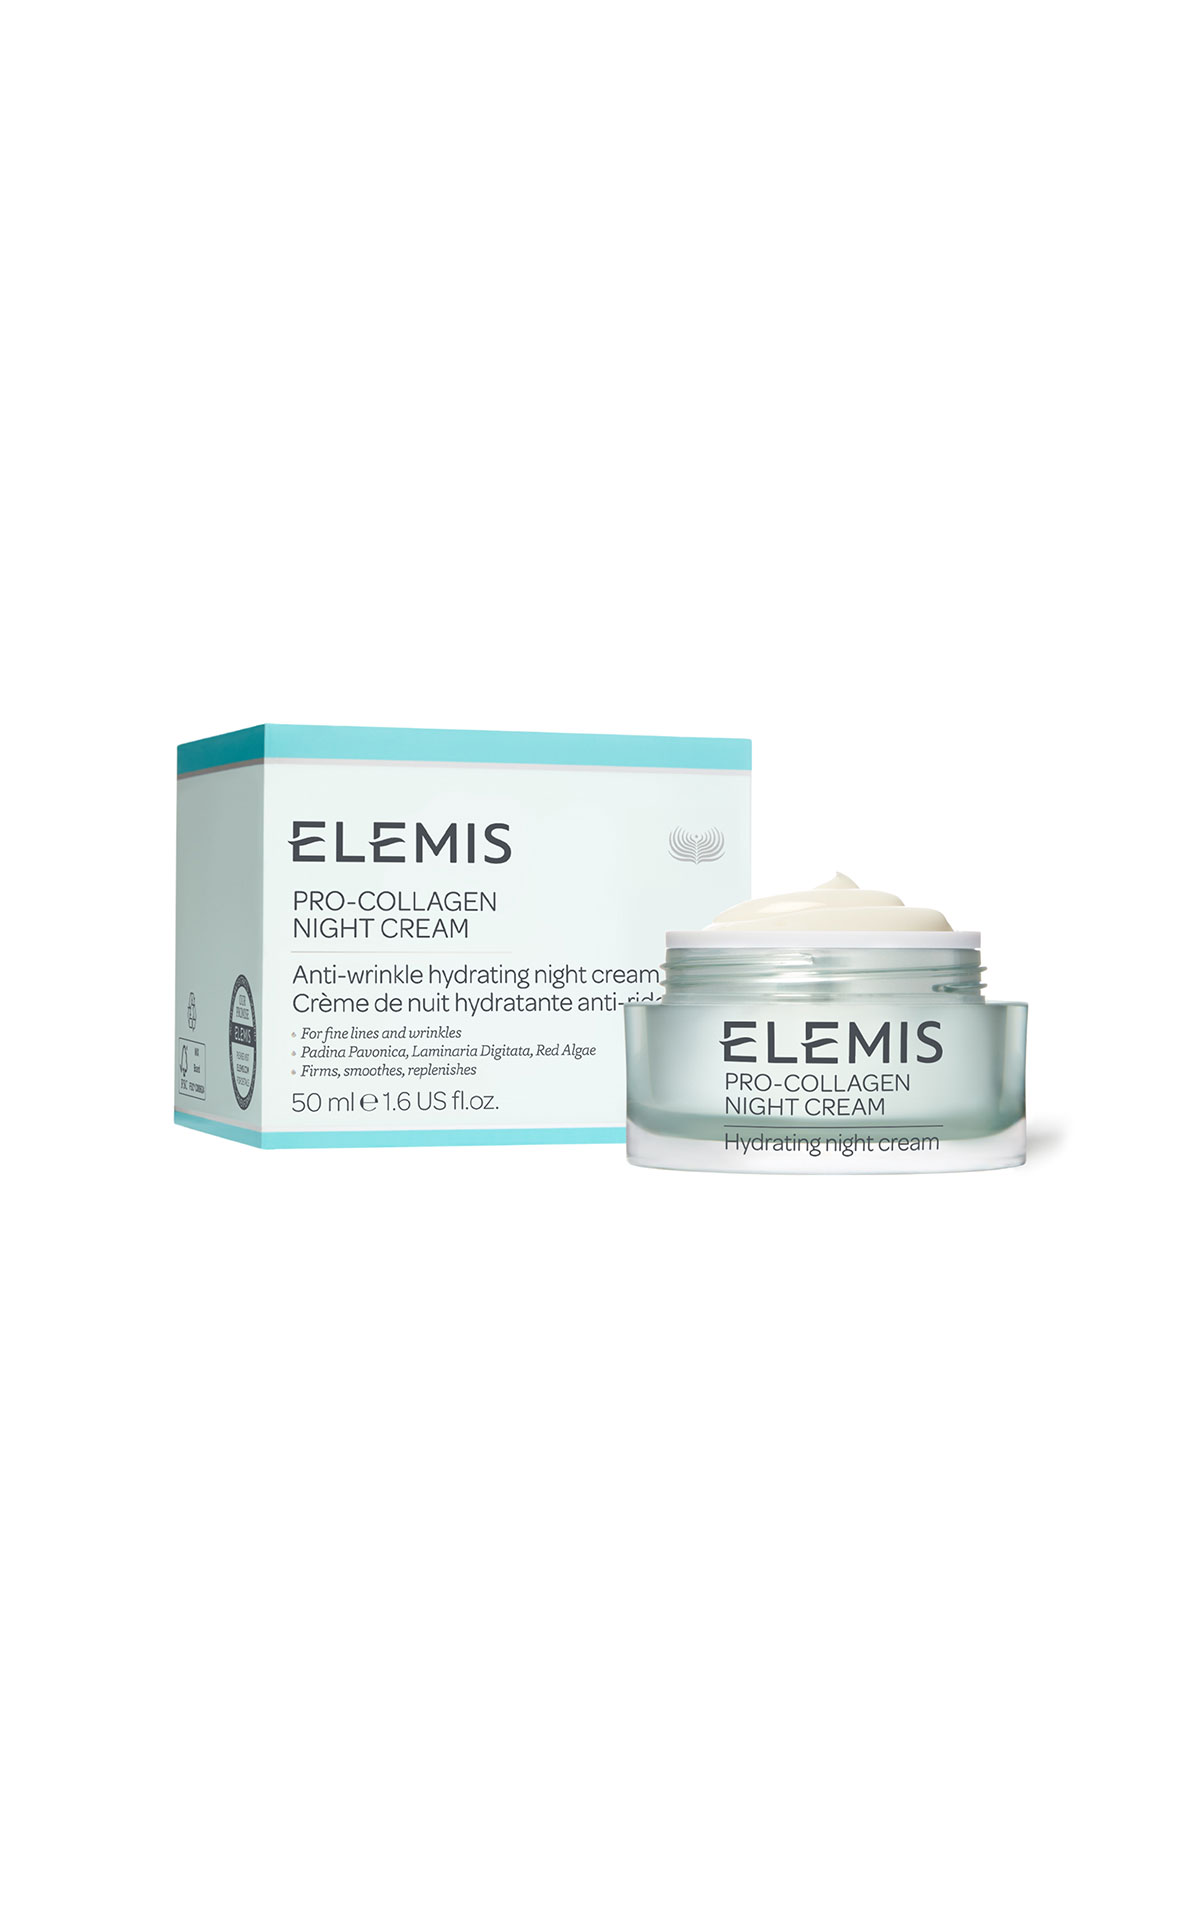 Elemis Pro-Collagen night cream from Bicester Village